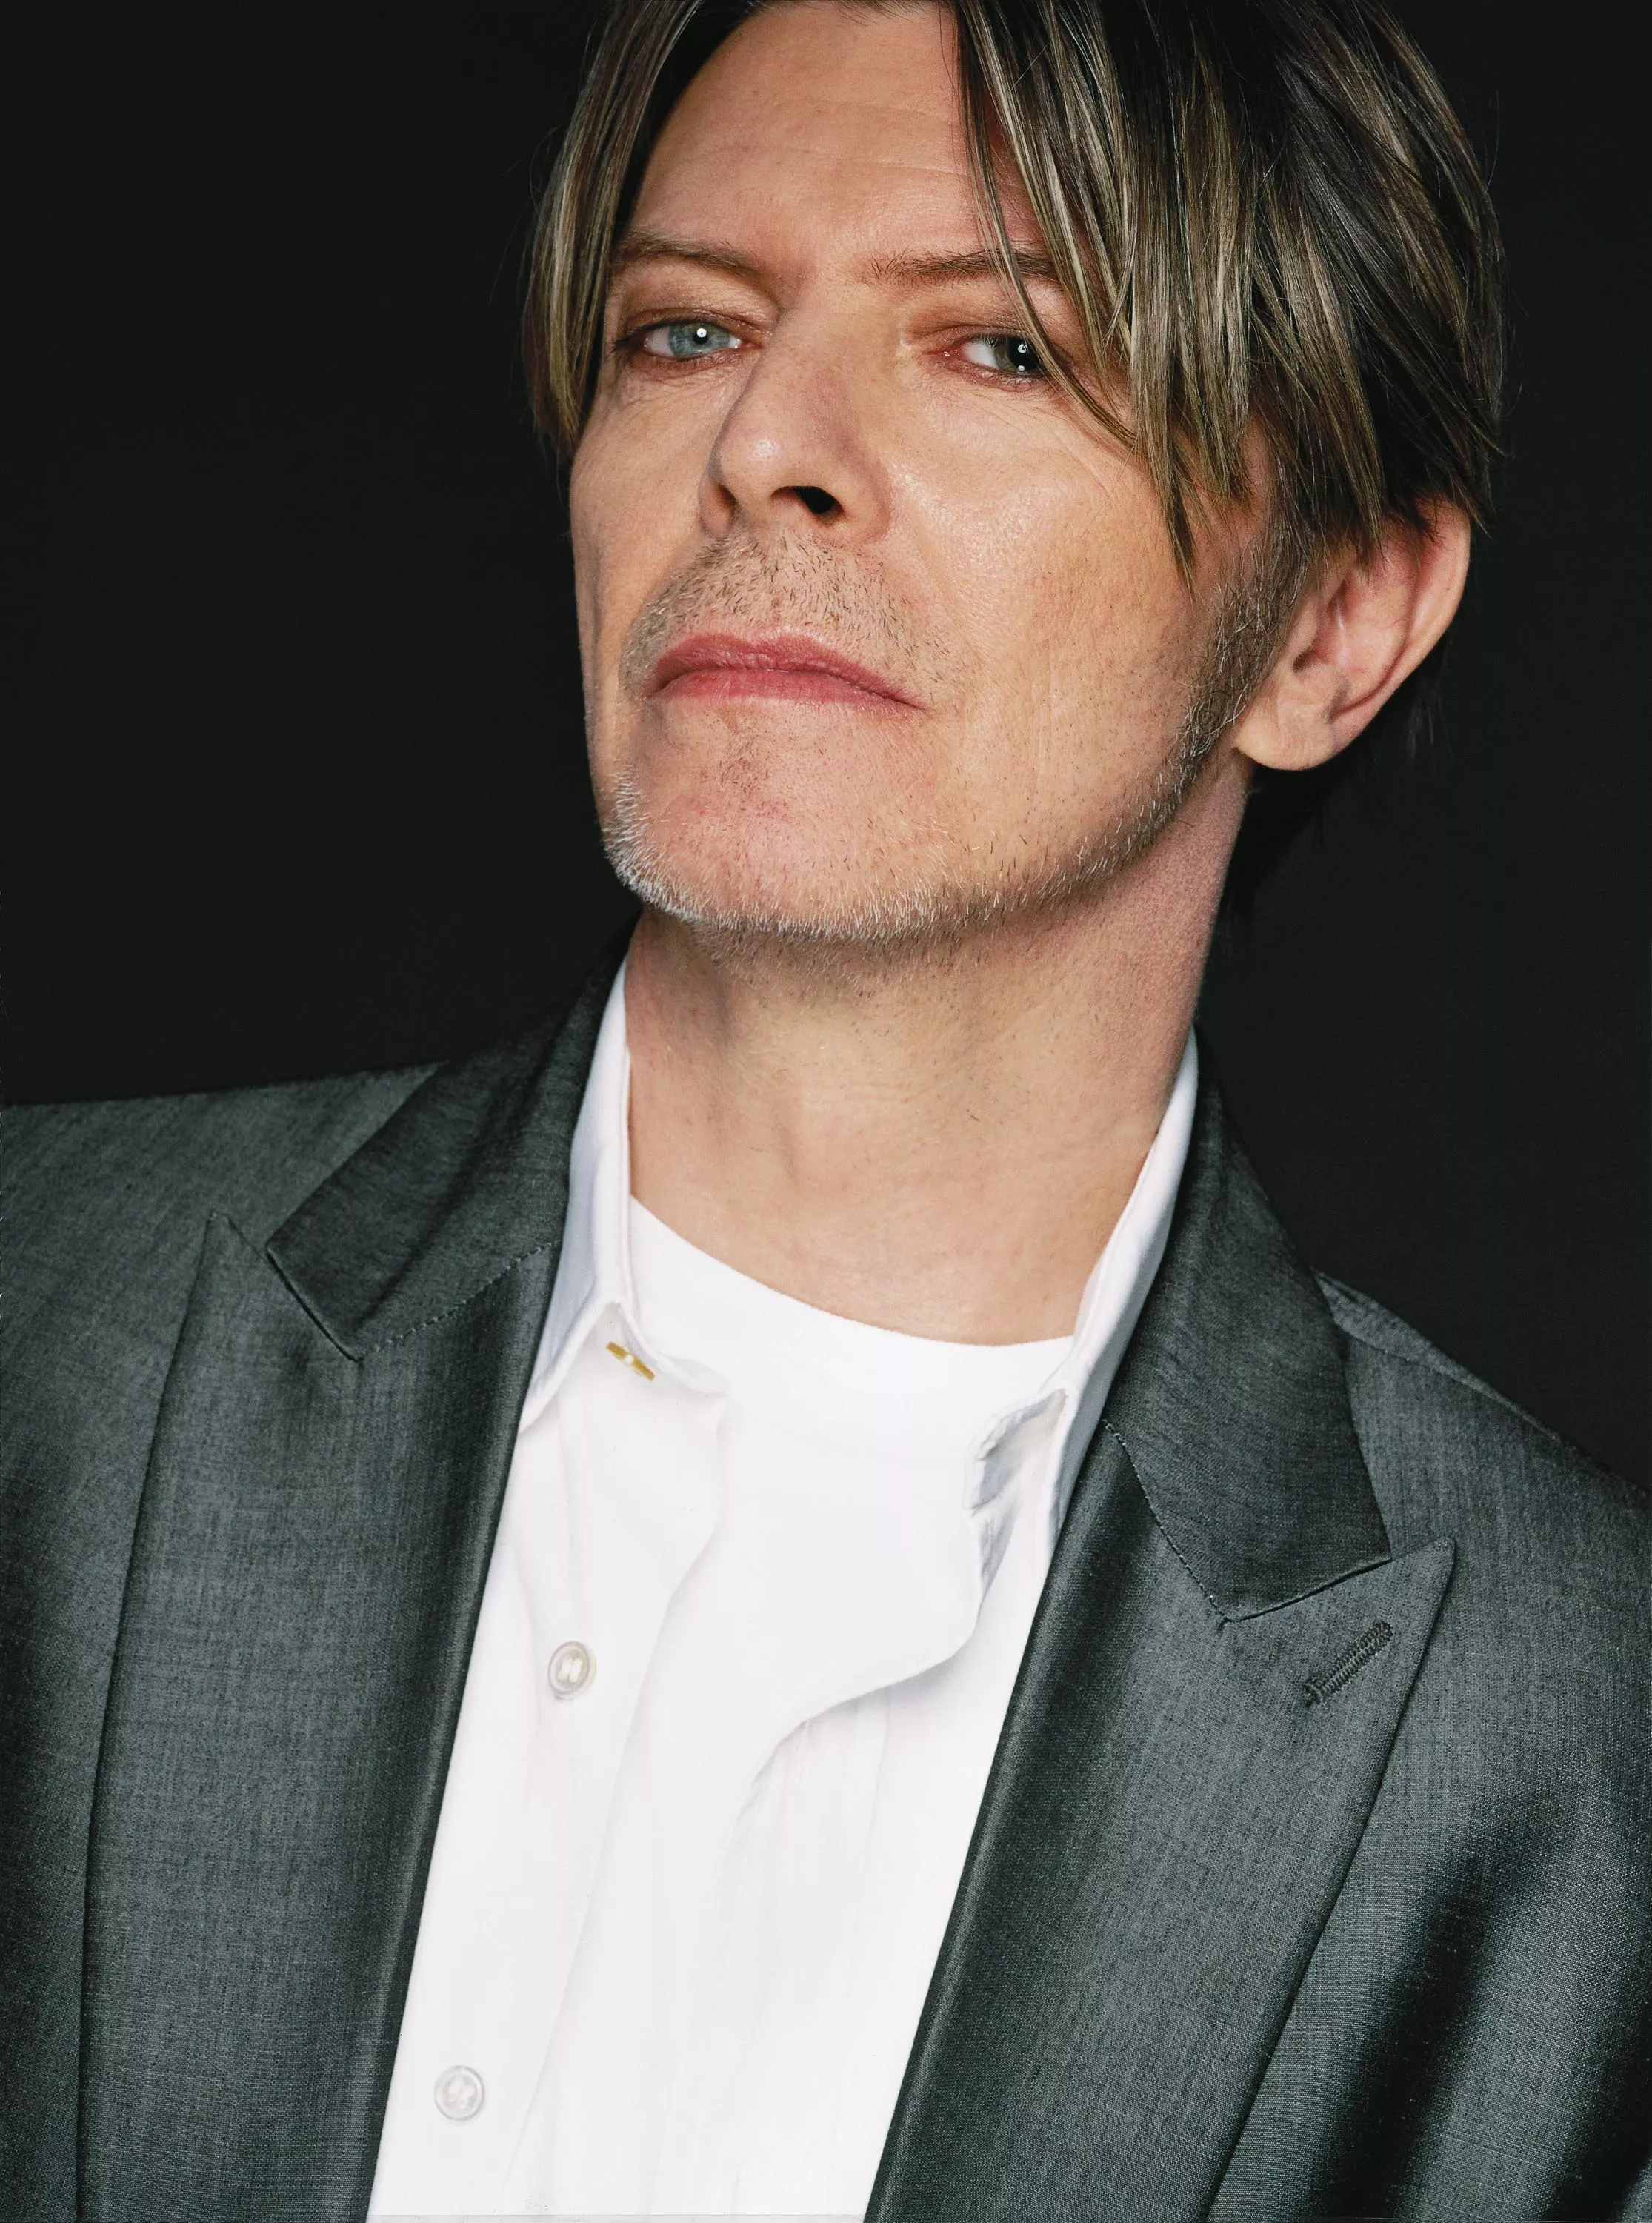 David Bowie på vej med ny sang og stor opsamling